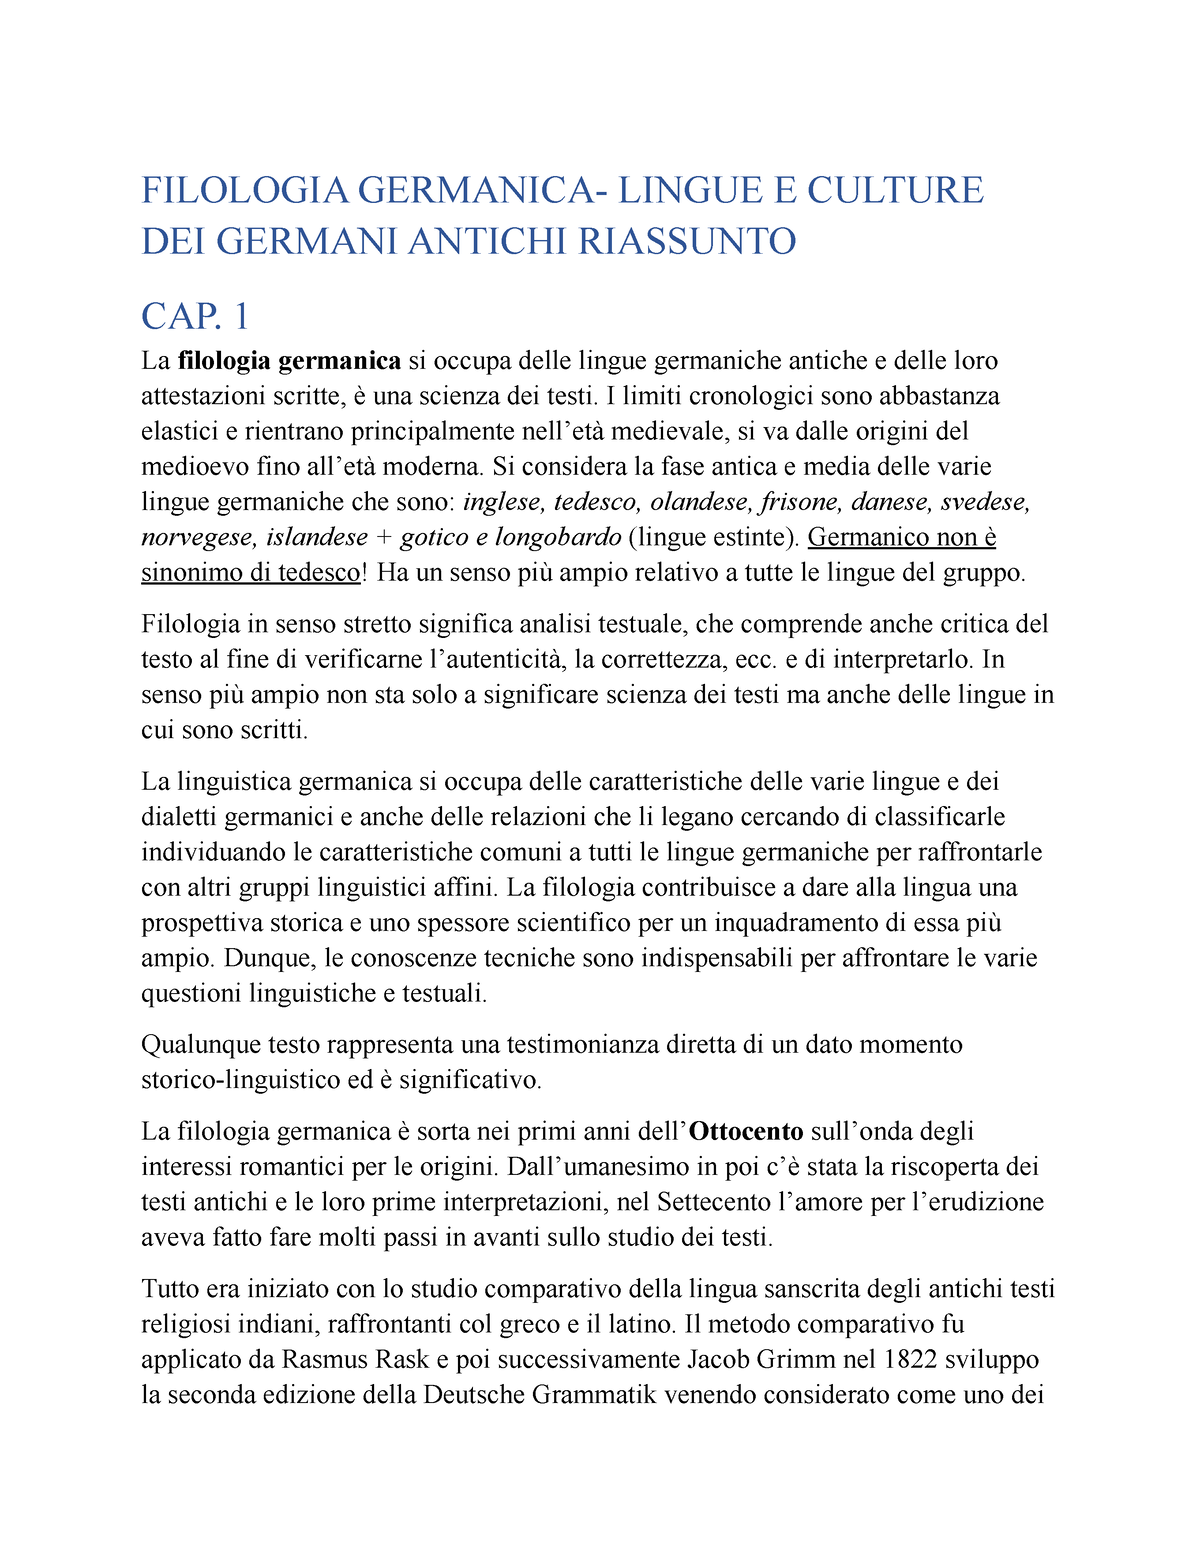 Riassunto completo di Filologia Germanica (Lingua e Storia)